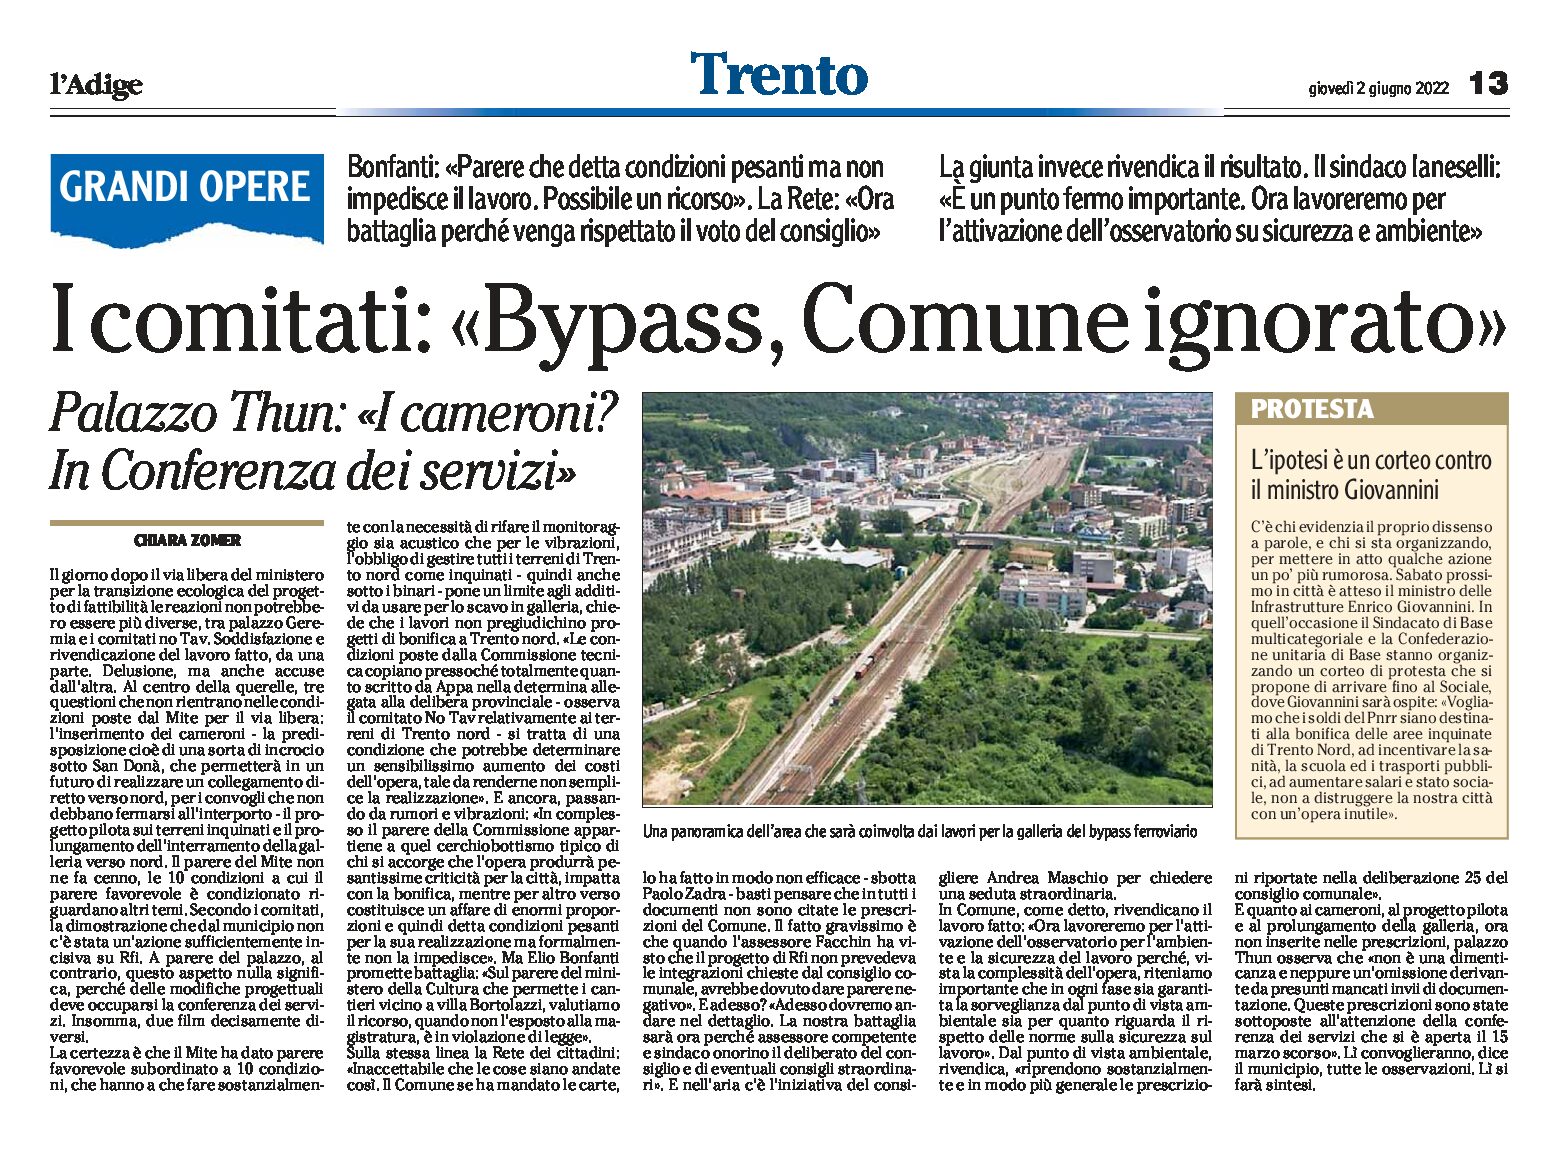 Trento, bypass: i comitati “Comune ignorato”